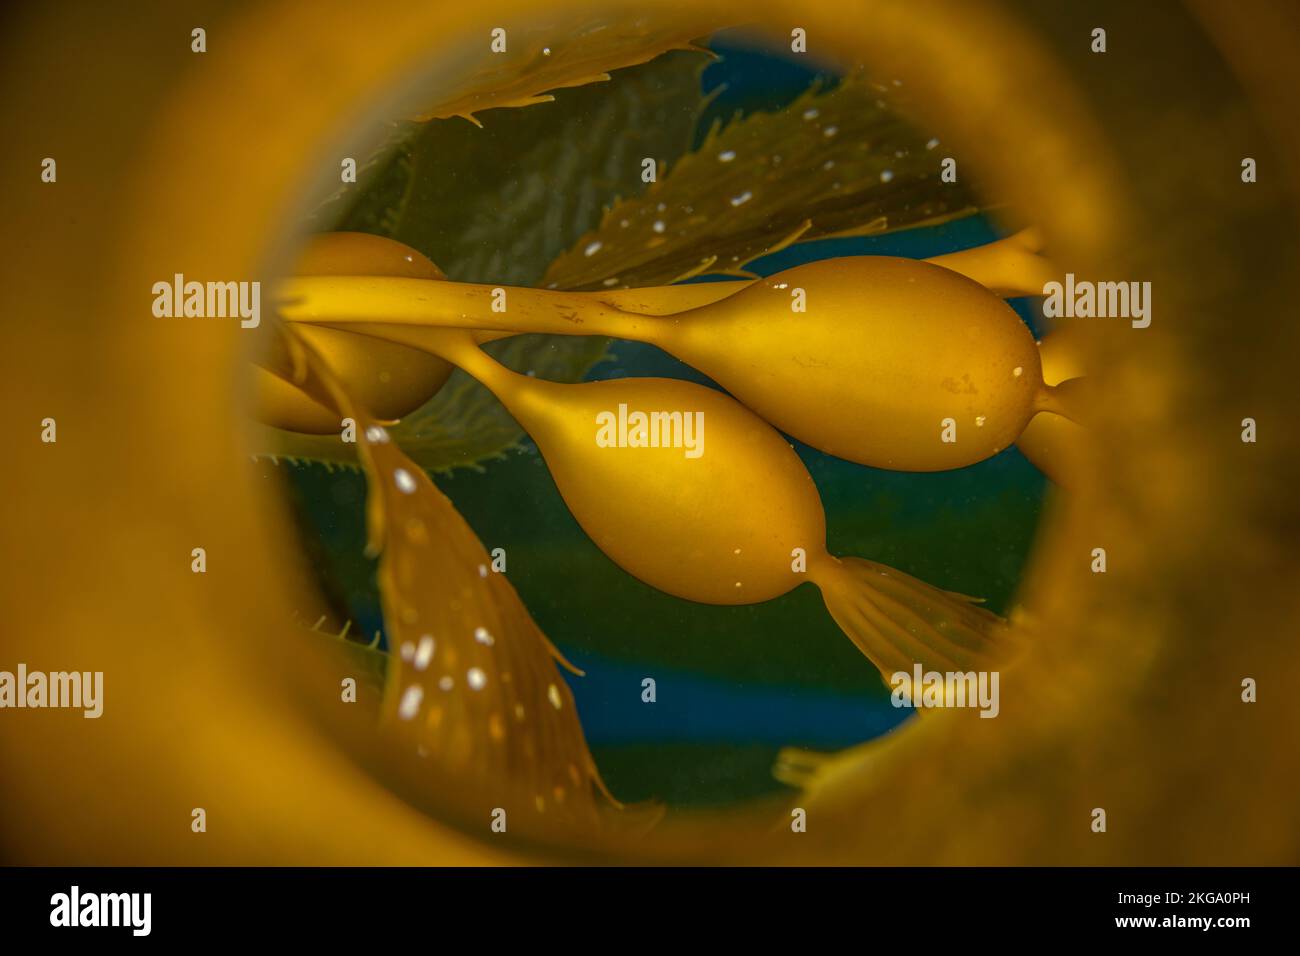 Immagine ravvicinata di un pneumatocista kelp, o vescica, che vengono utilizzati per booare kelp. Sparato attraverso un tubo riflettente per ottenere il riflesso curvo. Foto Stock